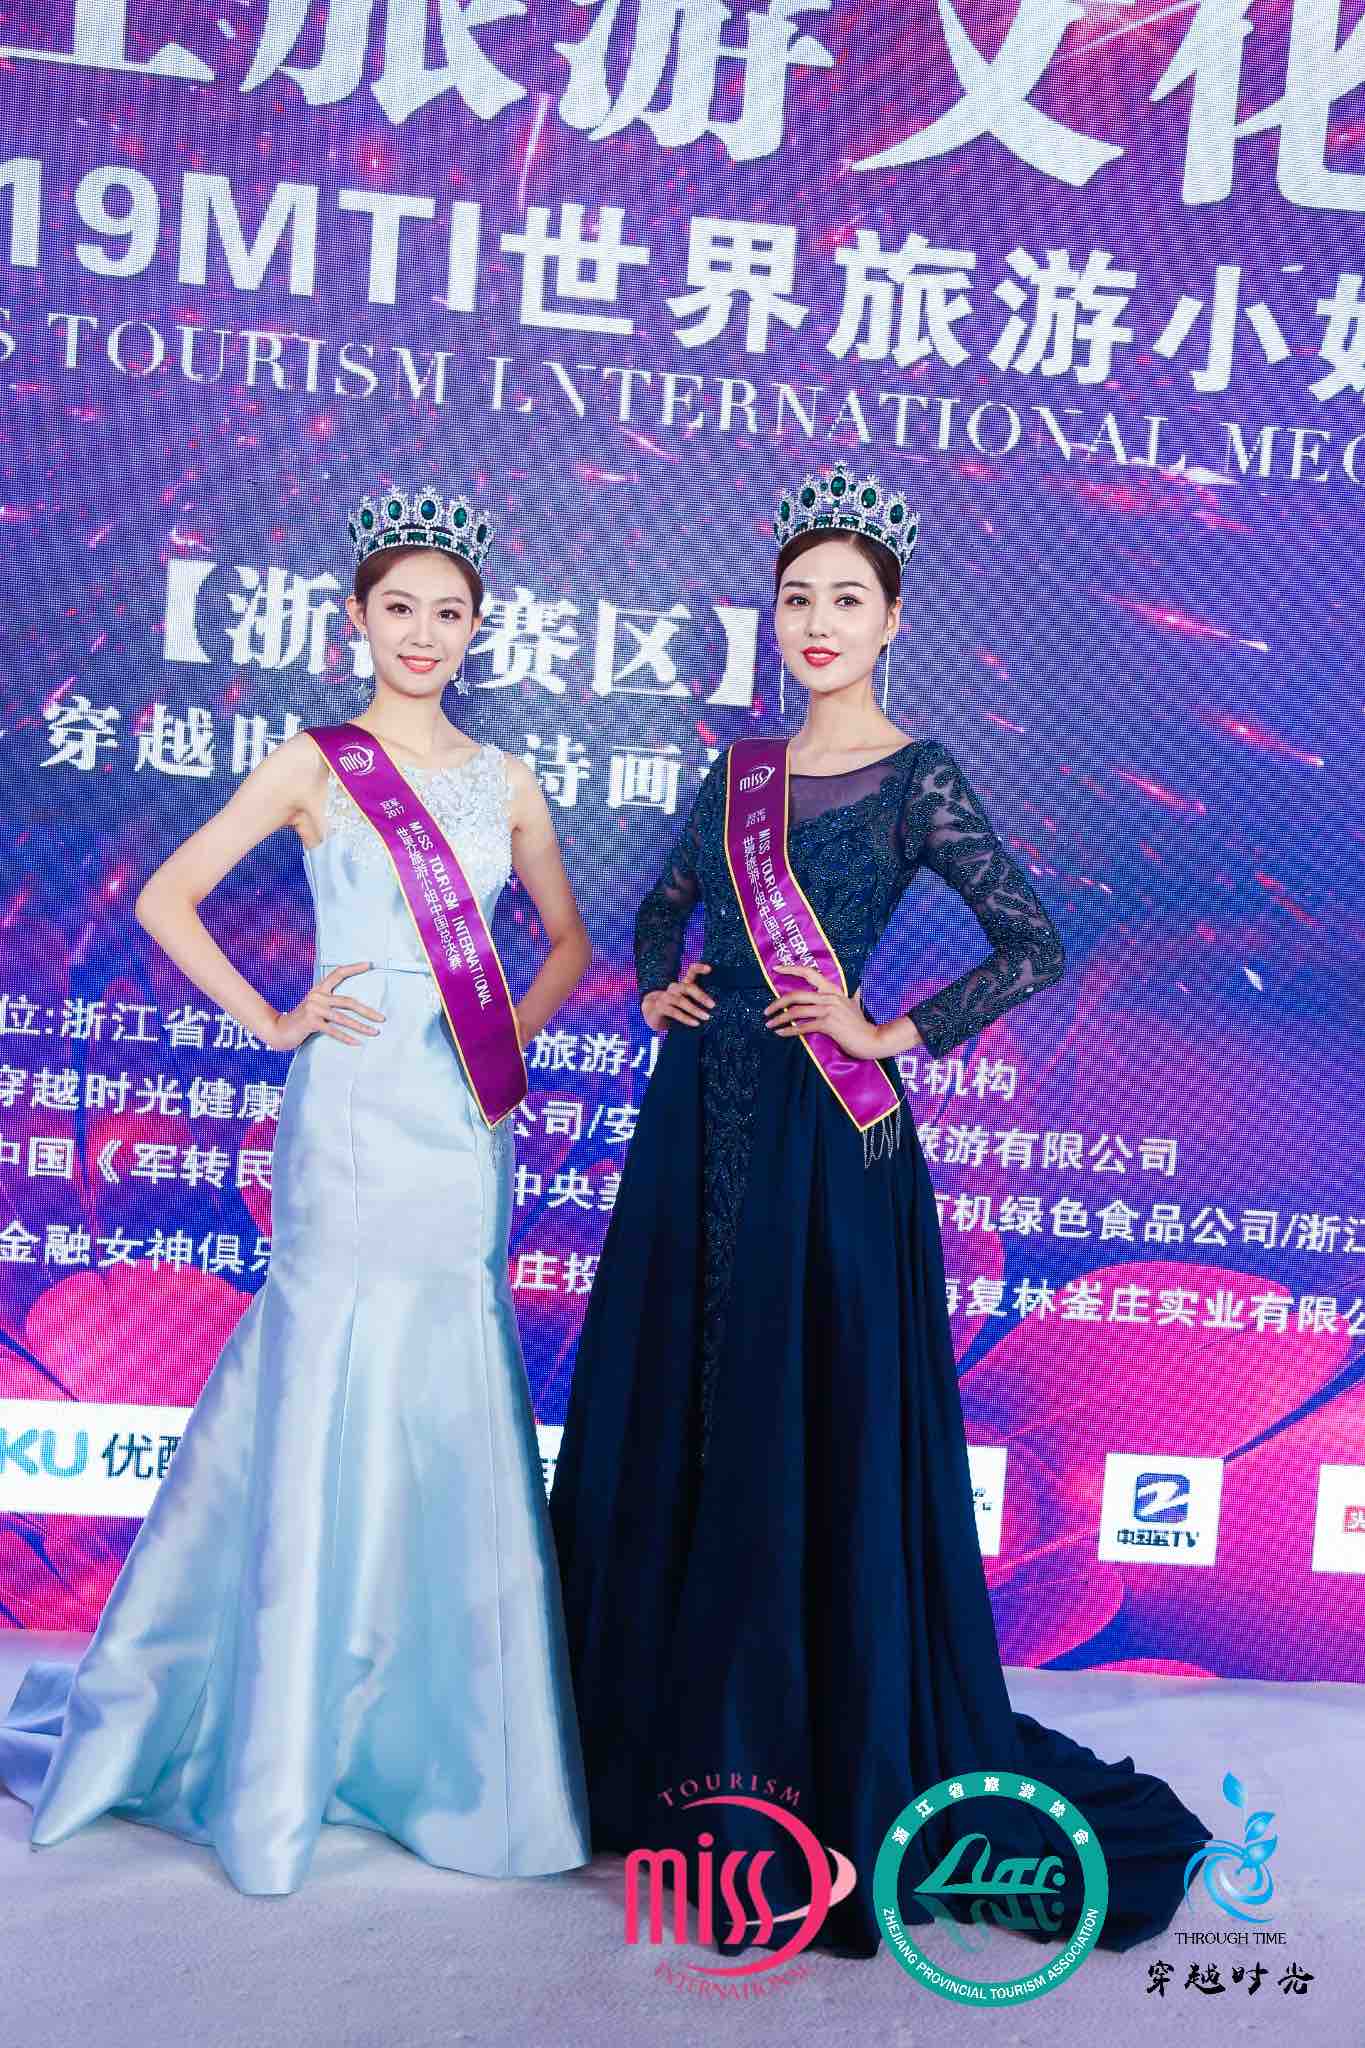 张馨予荣获第72届世界小姐大赛深圳总决赛冠军形象大使 - 中国焦点日报网